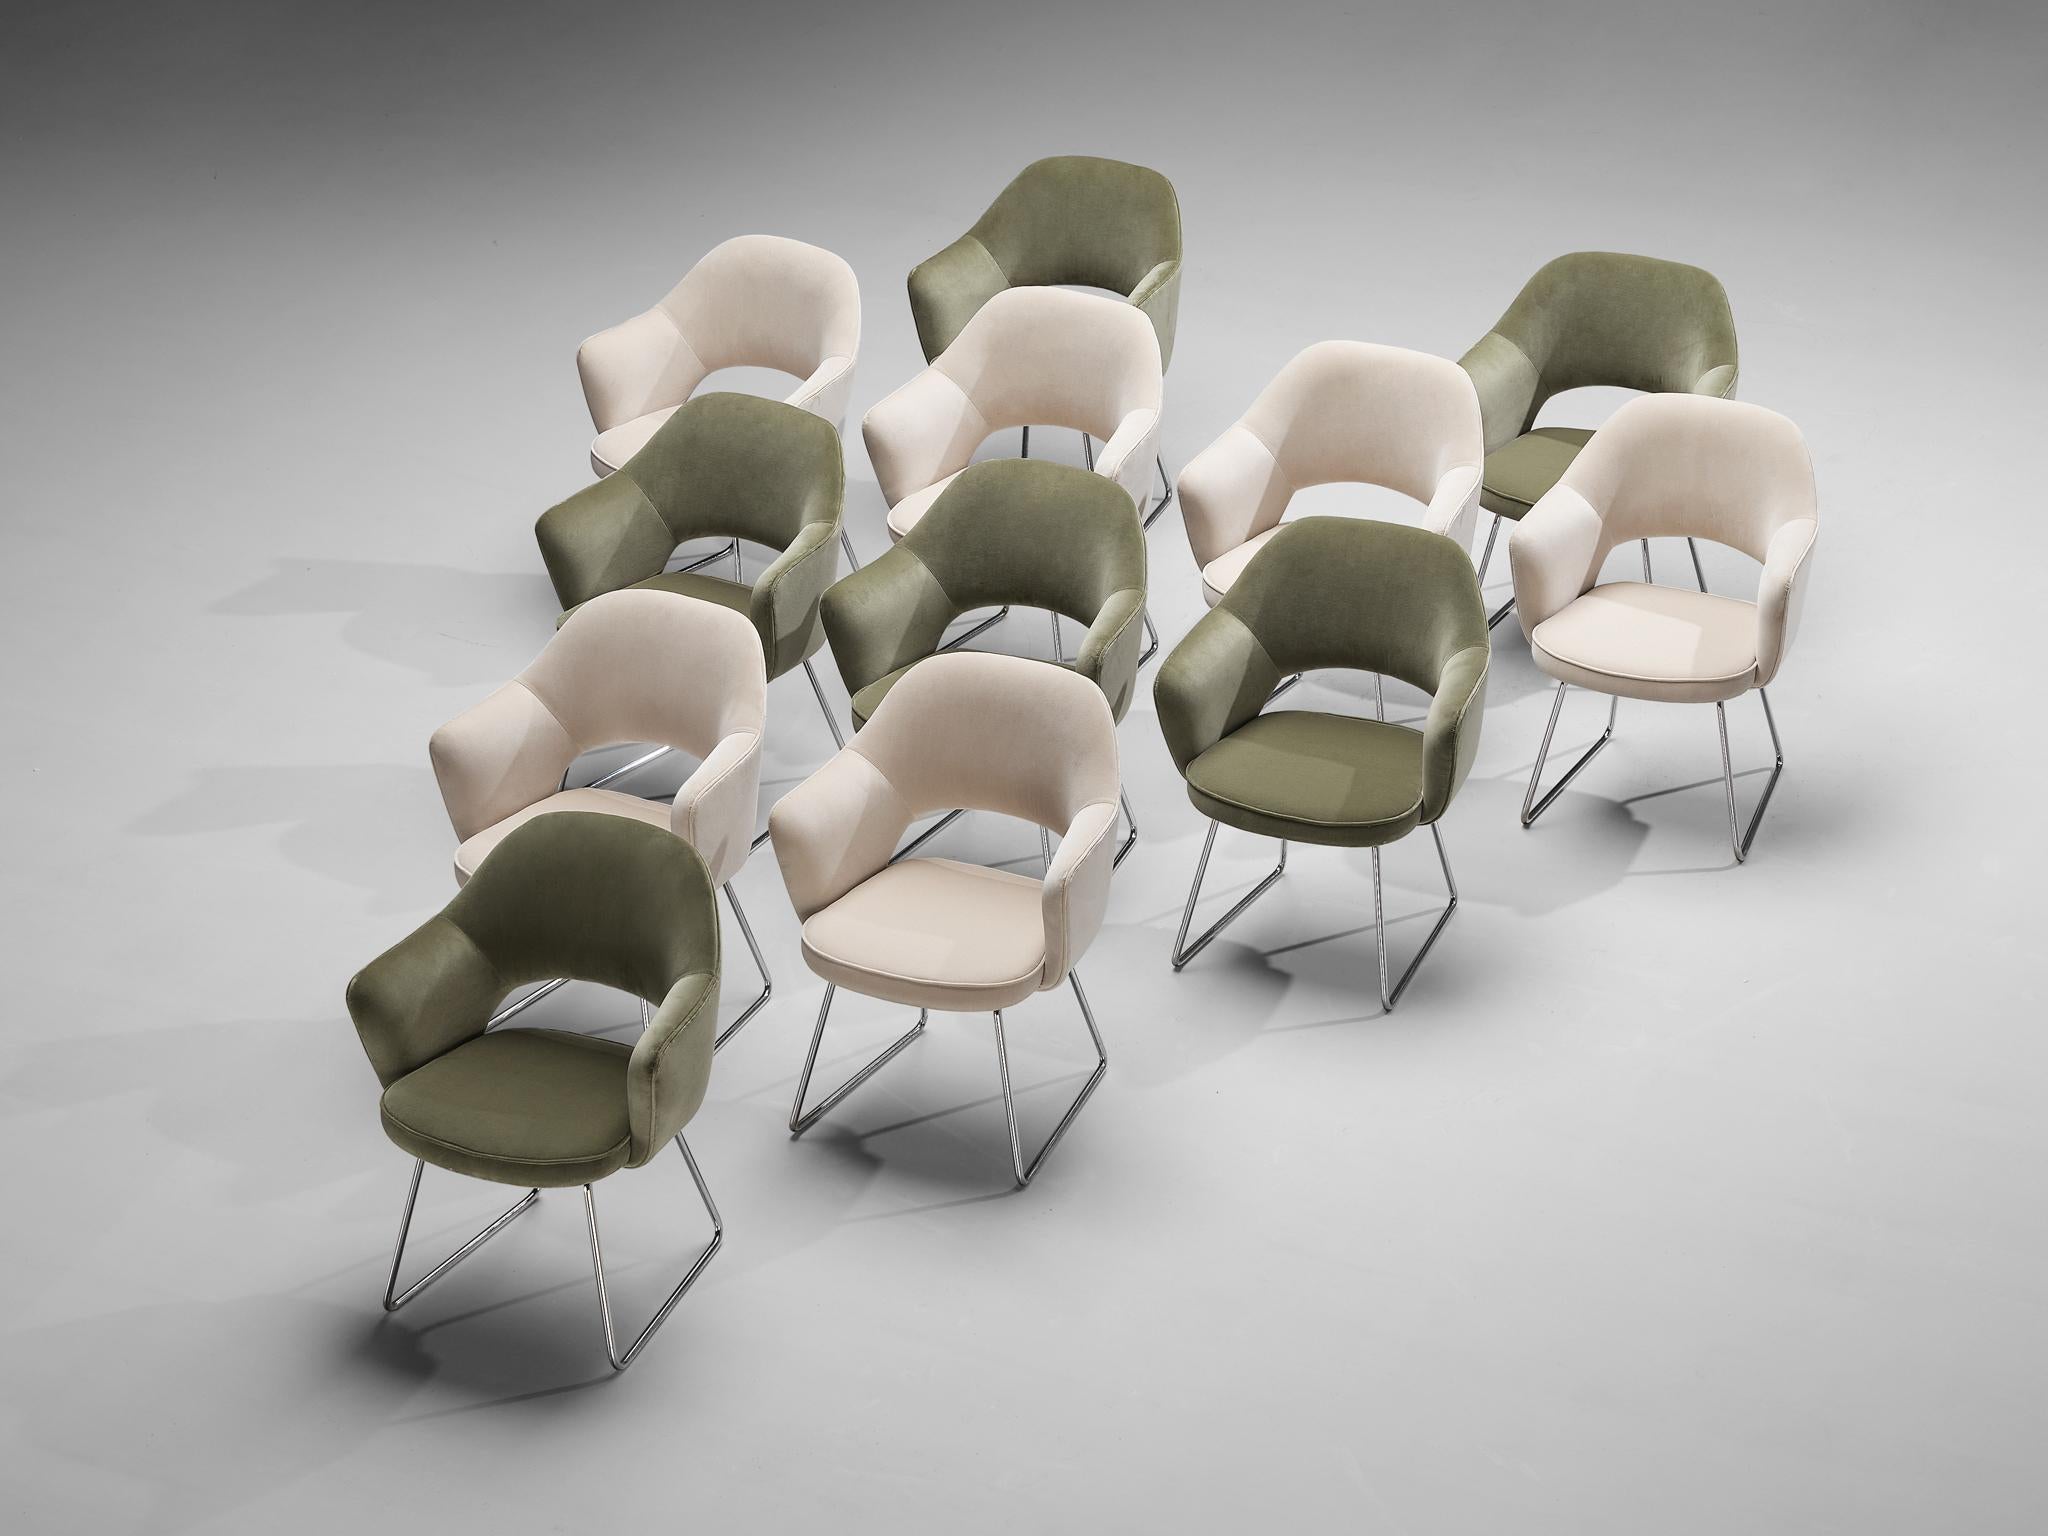 Eero Saarinen Limited Edition ‘Conference’ Armchairs of UNESCO Paris In Good Condition For Sale In Waalwijk, NL